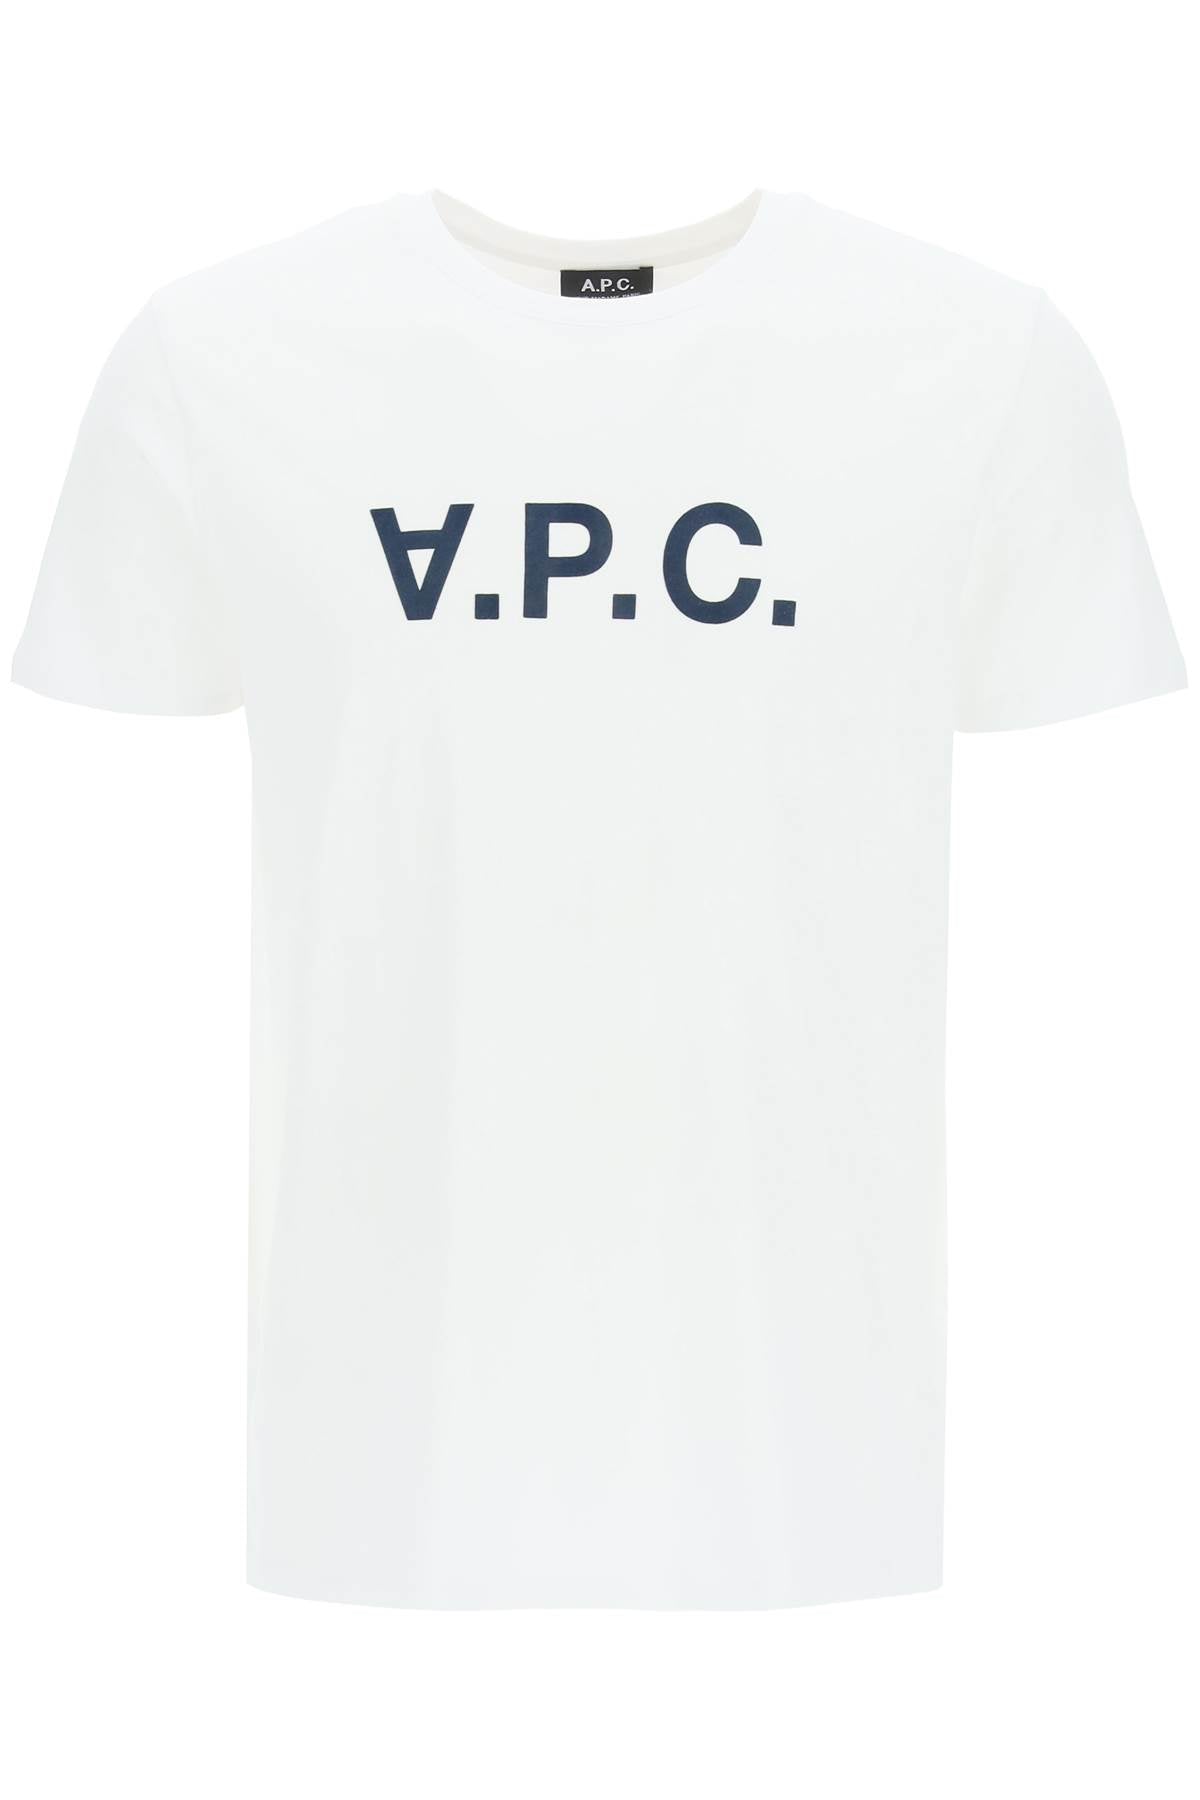 Flocked V.P.C. Logo T-Shirt